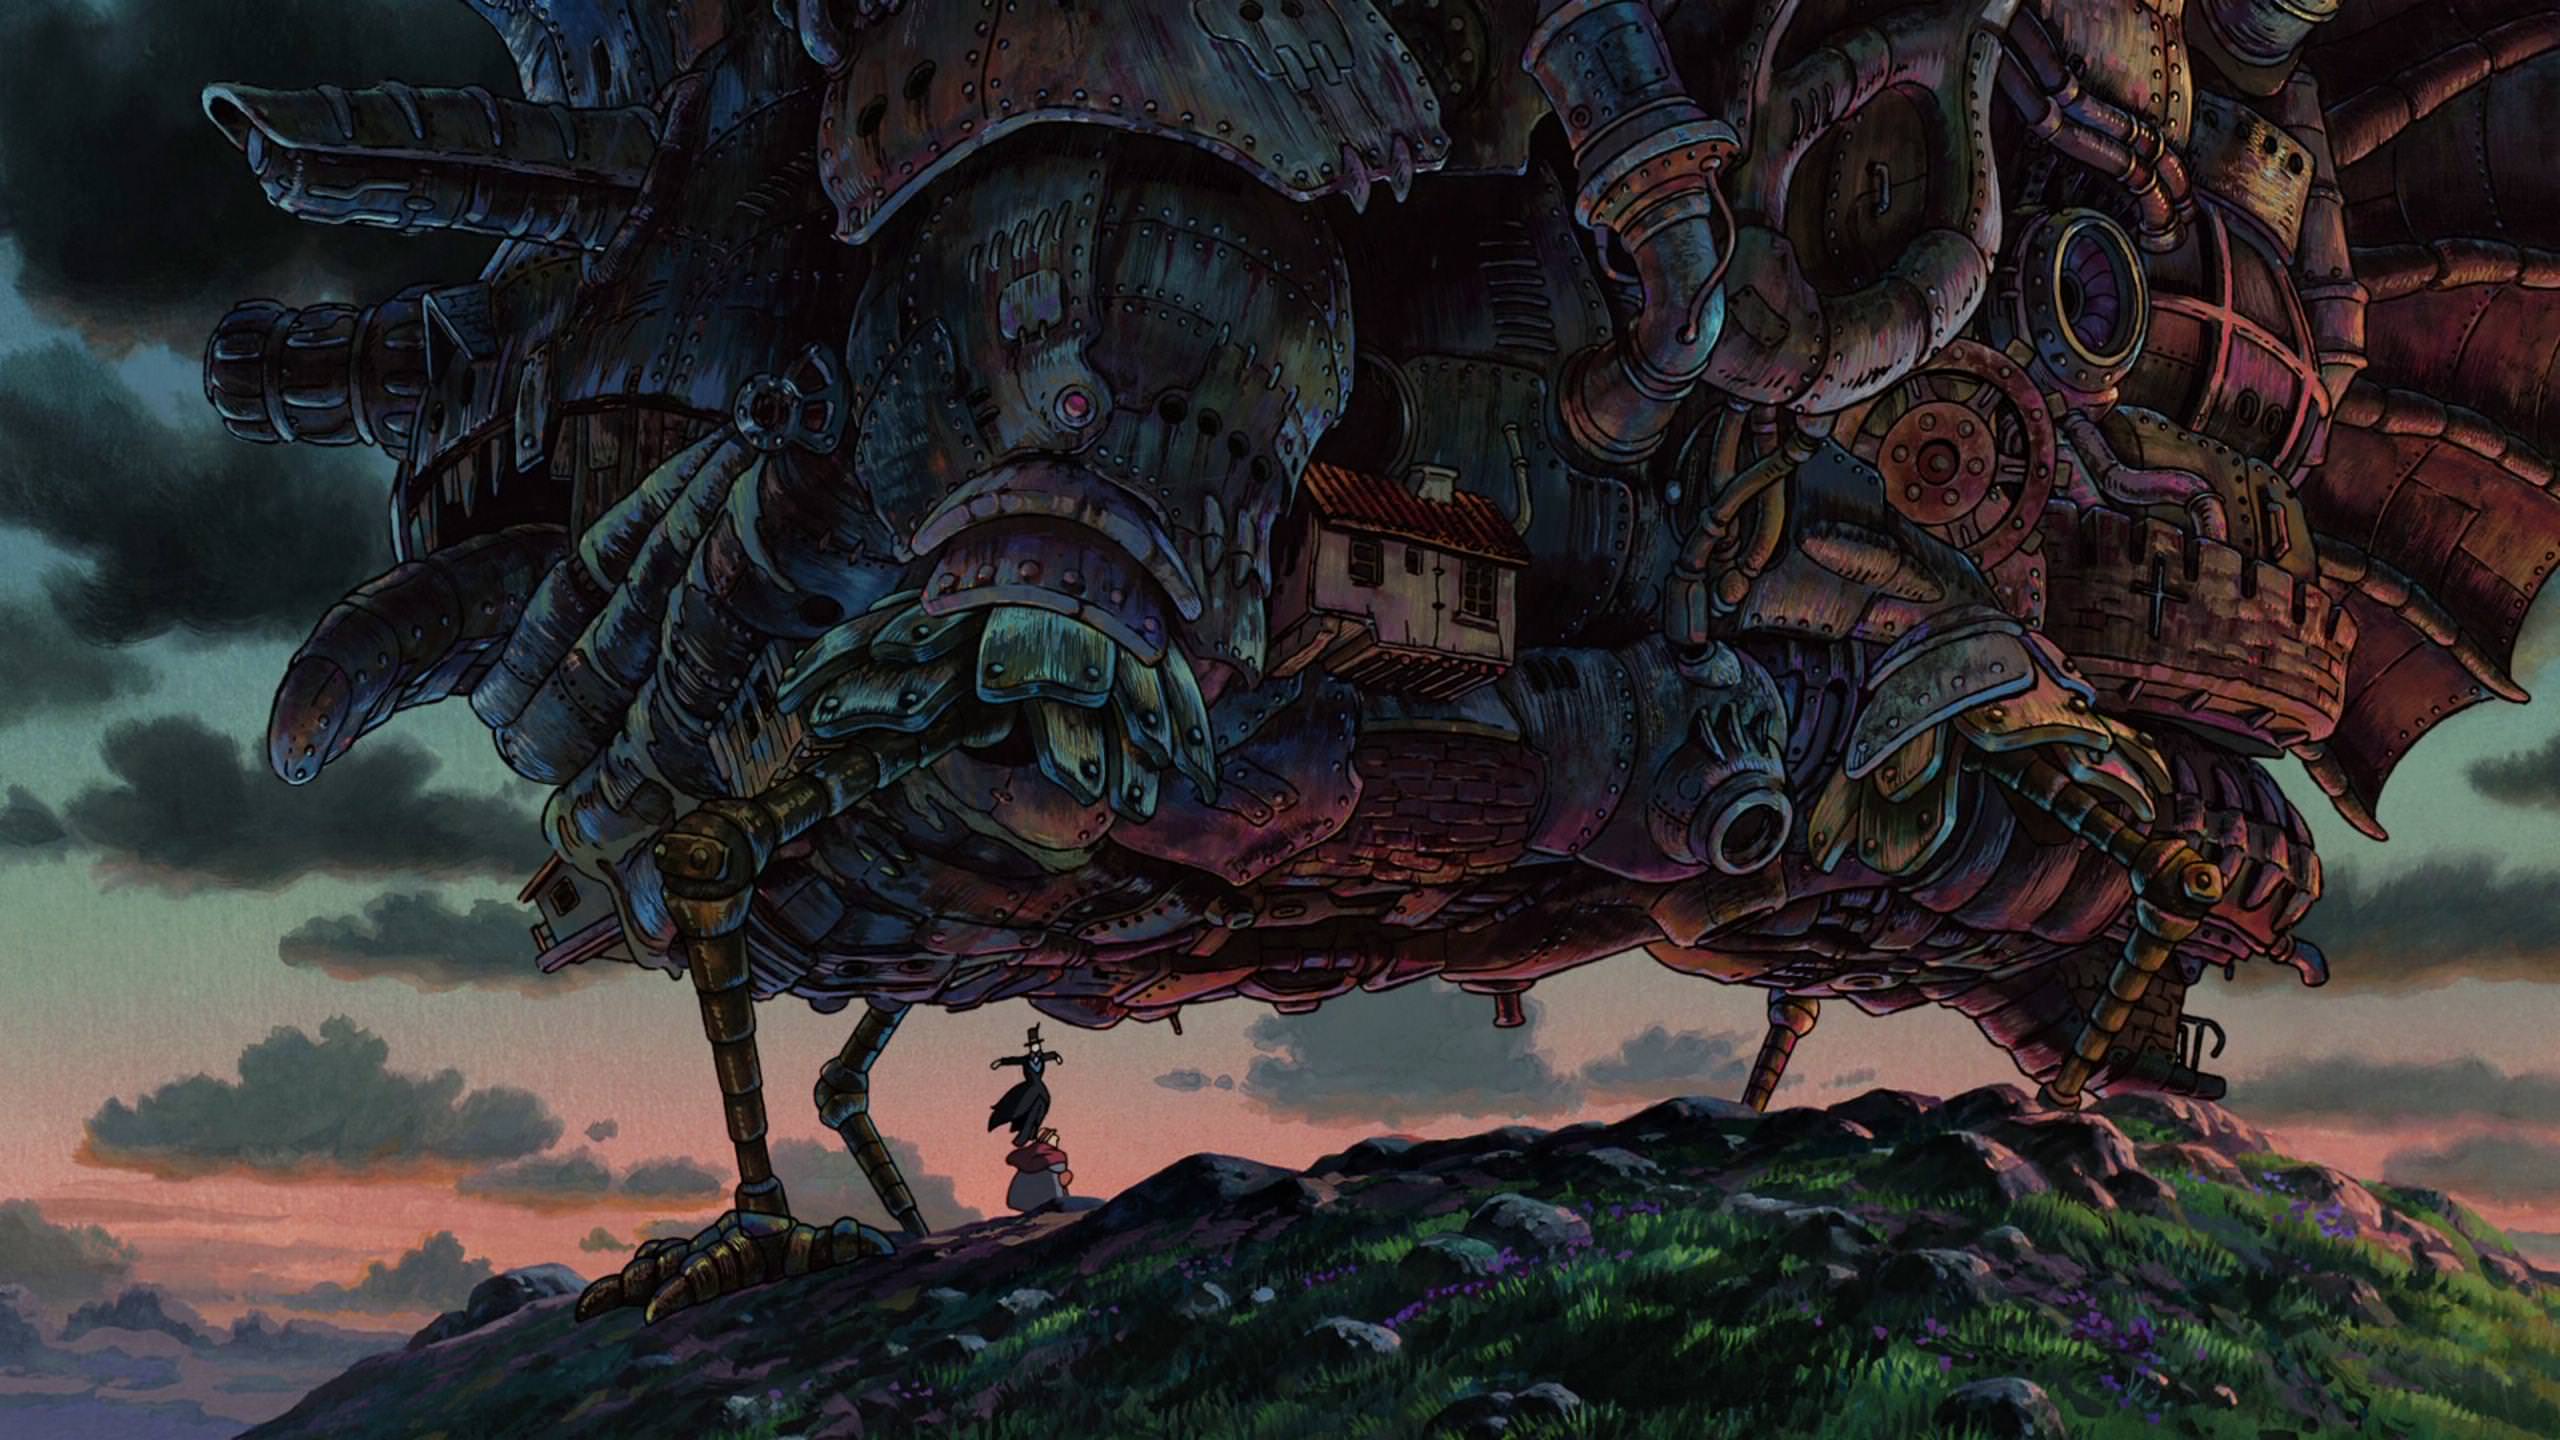 Studio Ghibli Anime Hauru No Ugoku Shiro Howls Moving Castle 2560x1440